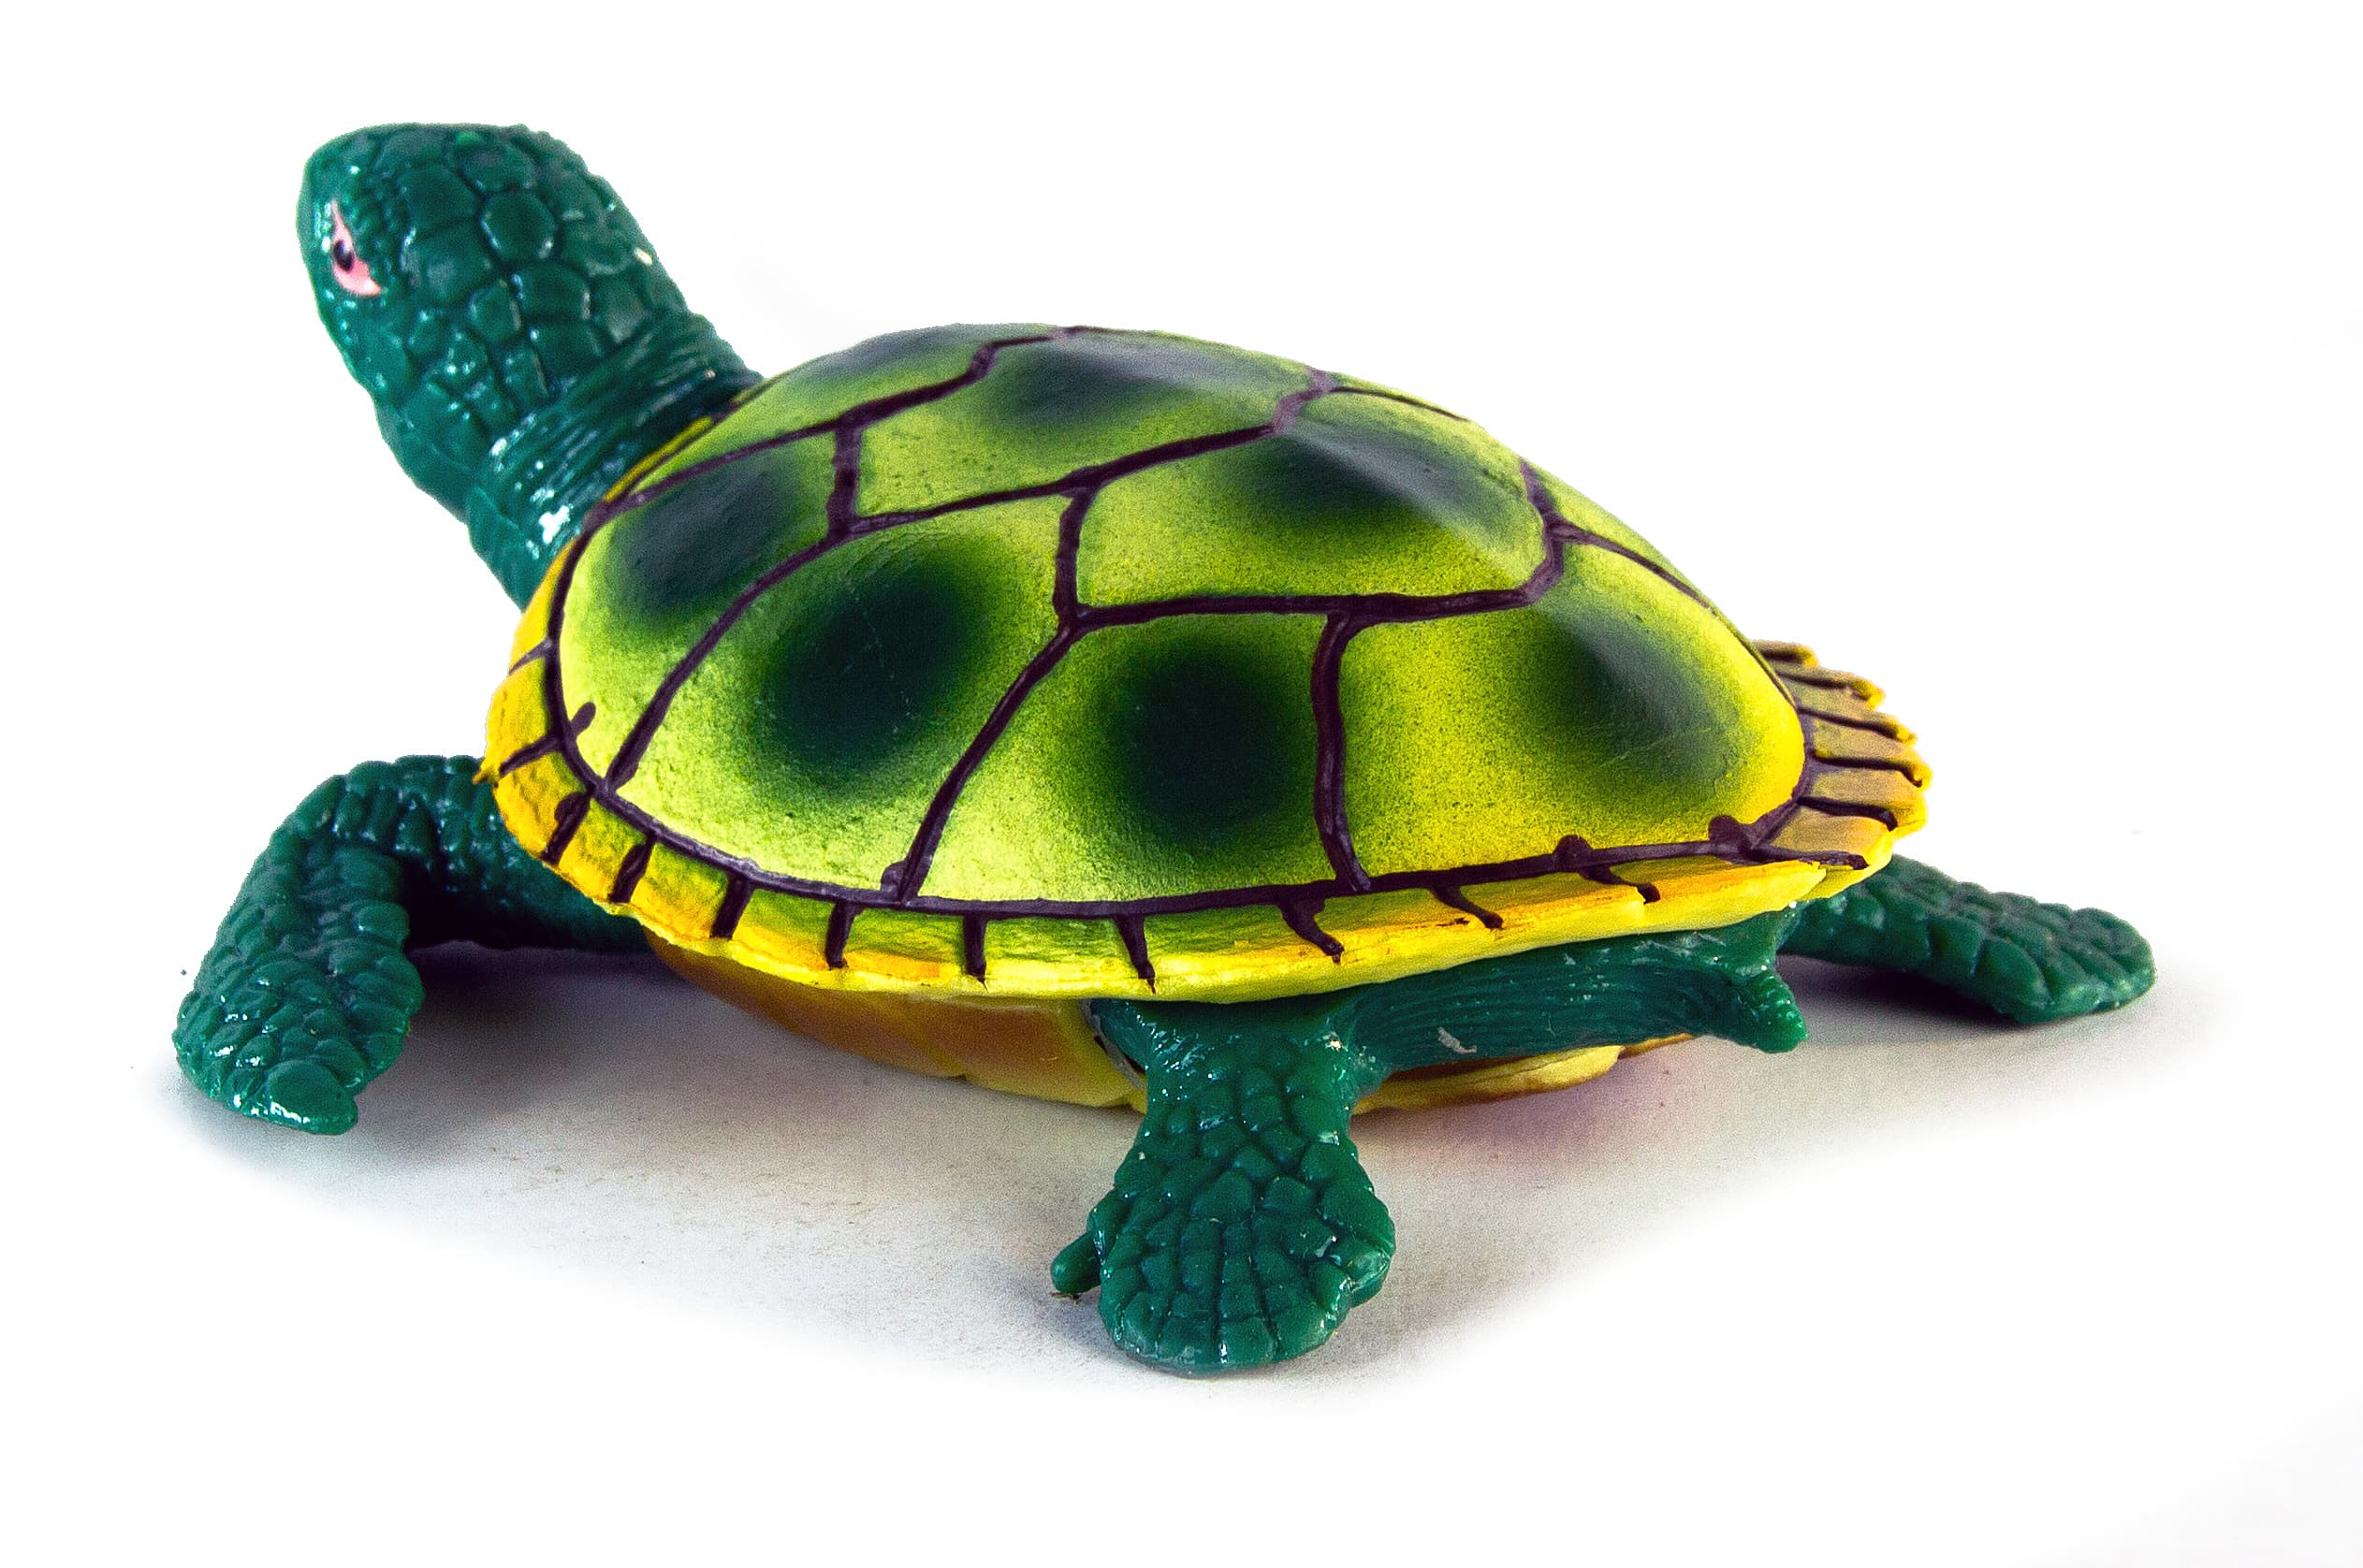 Набор игрушки резиновые фигурки-тянучки «Черепахи» 12.7 см. A009, Антистресс / 6 шт.